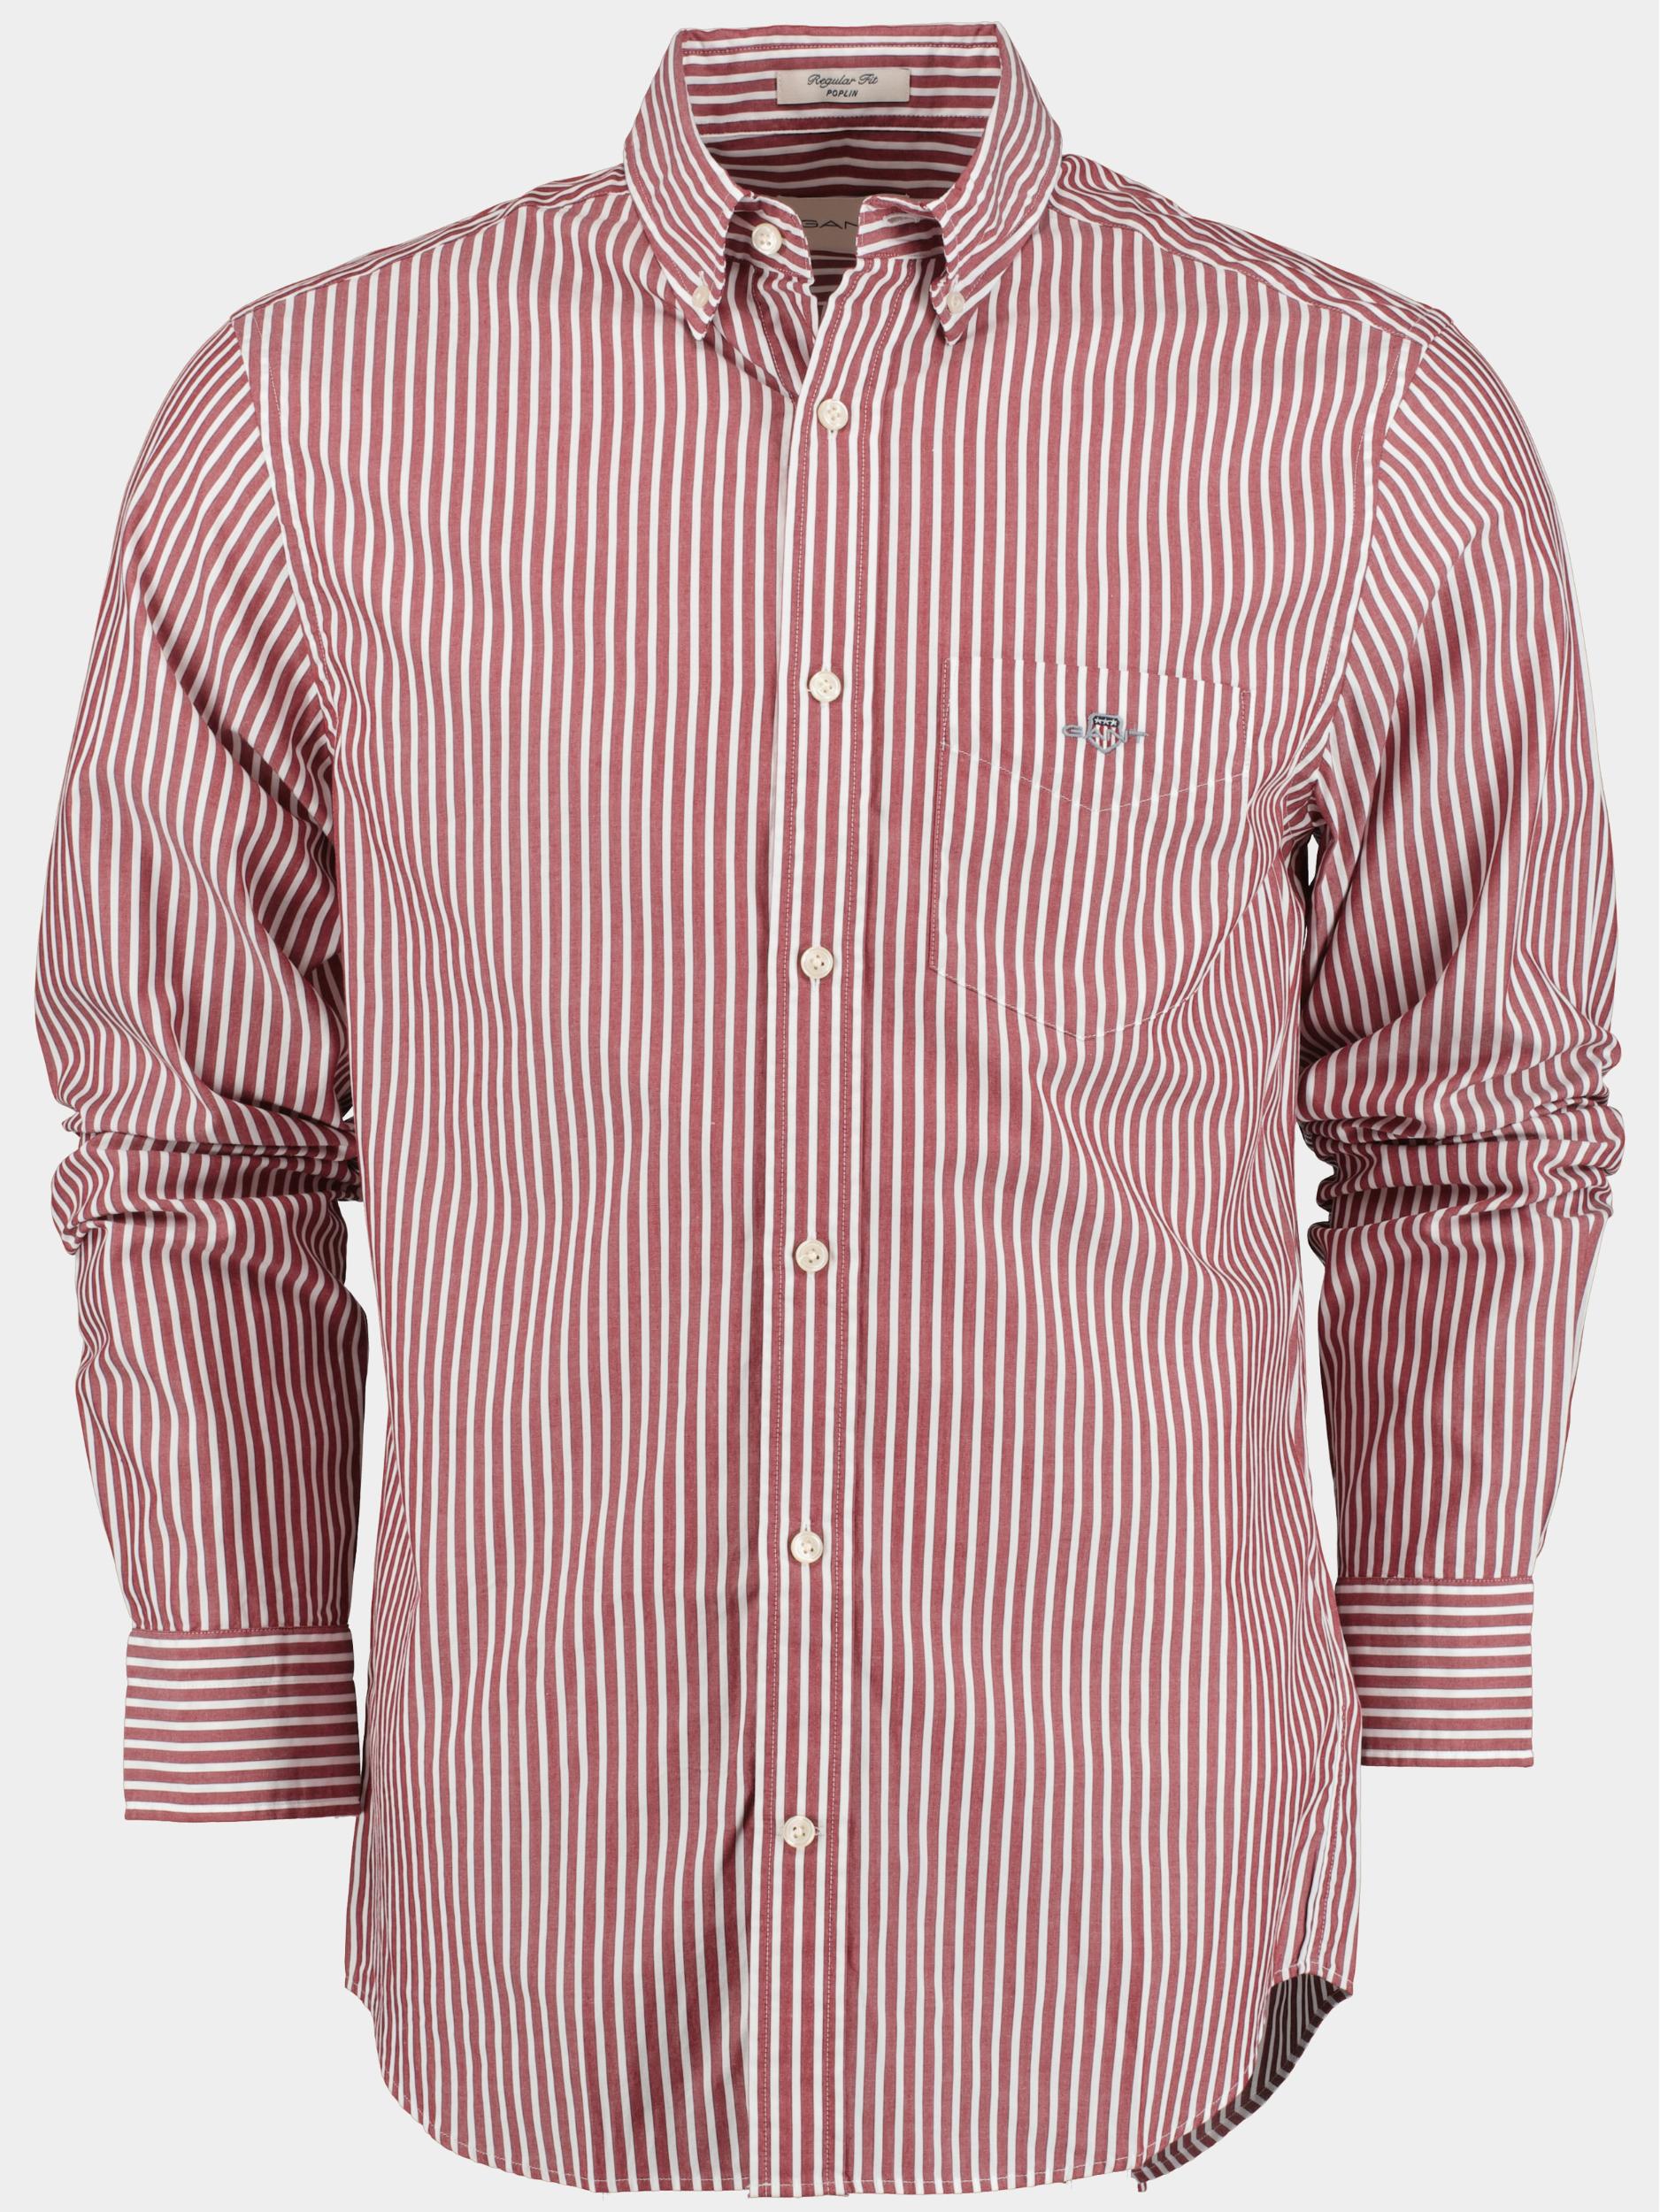 Gant Casual hemd lange mouw Rood Reg Poplin Stripe Shirt 3000130/604